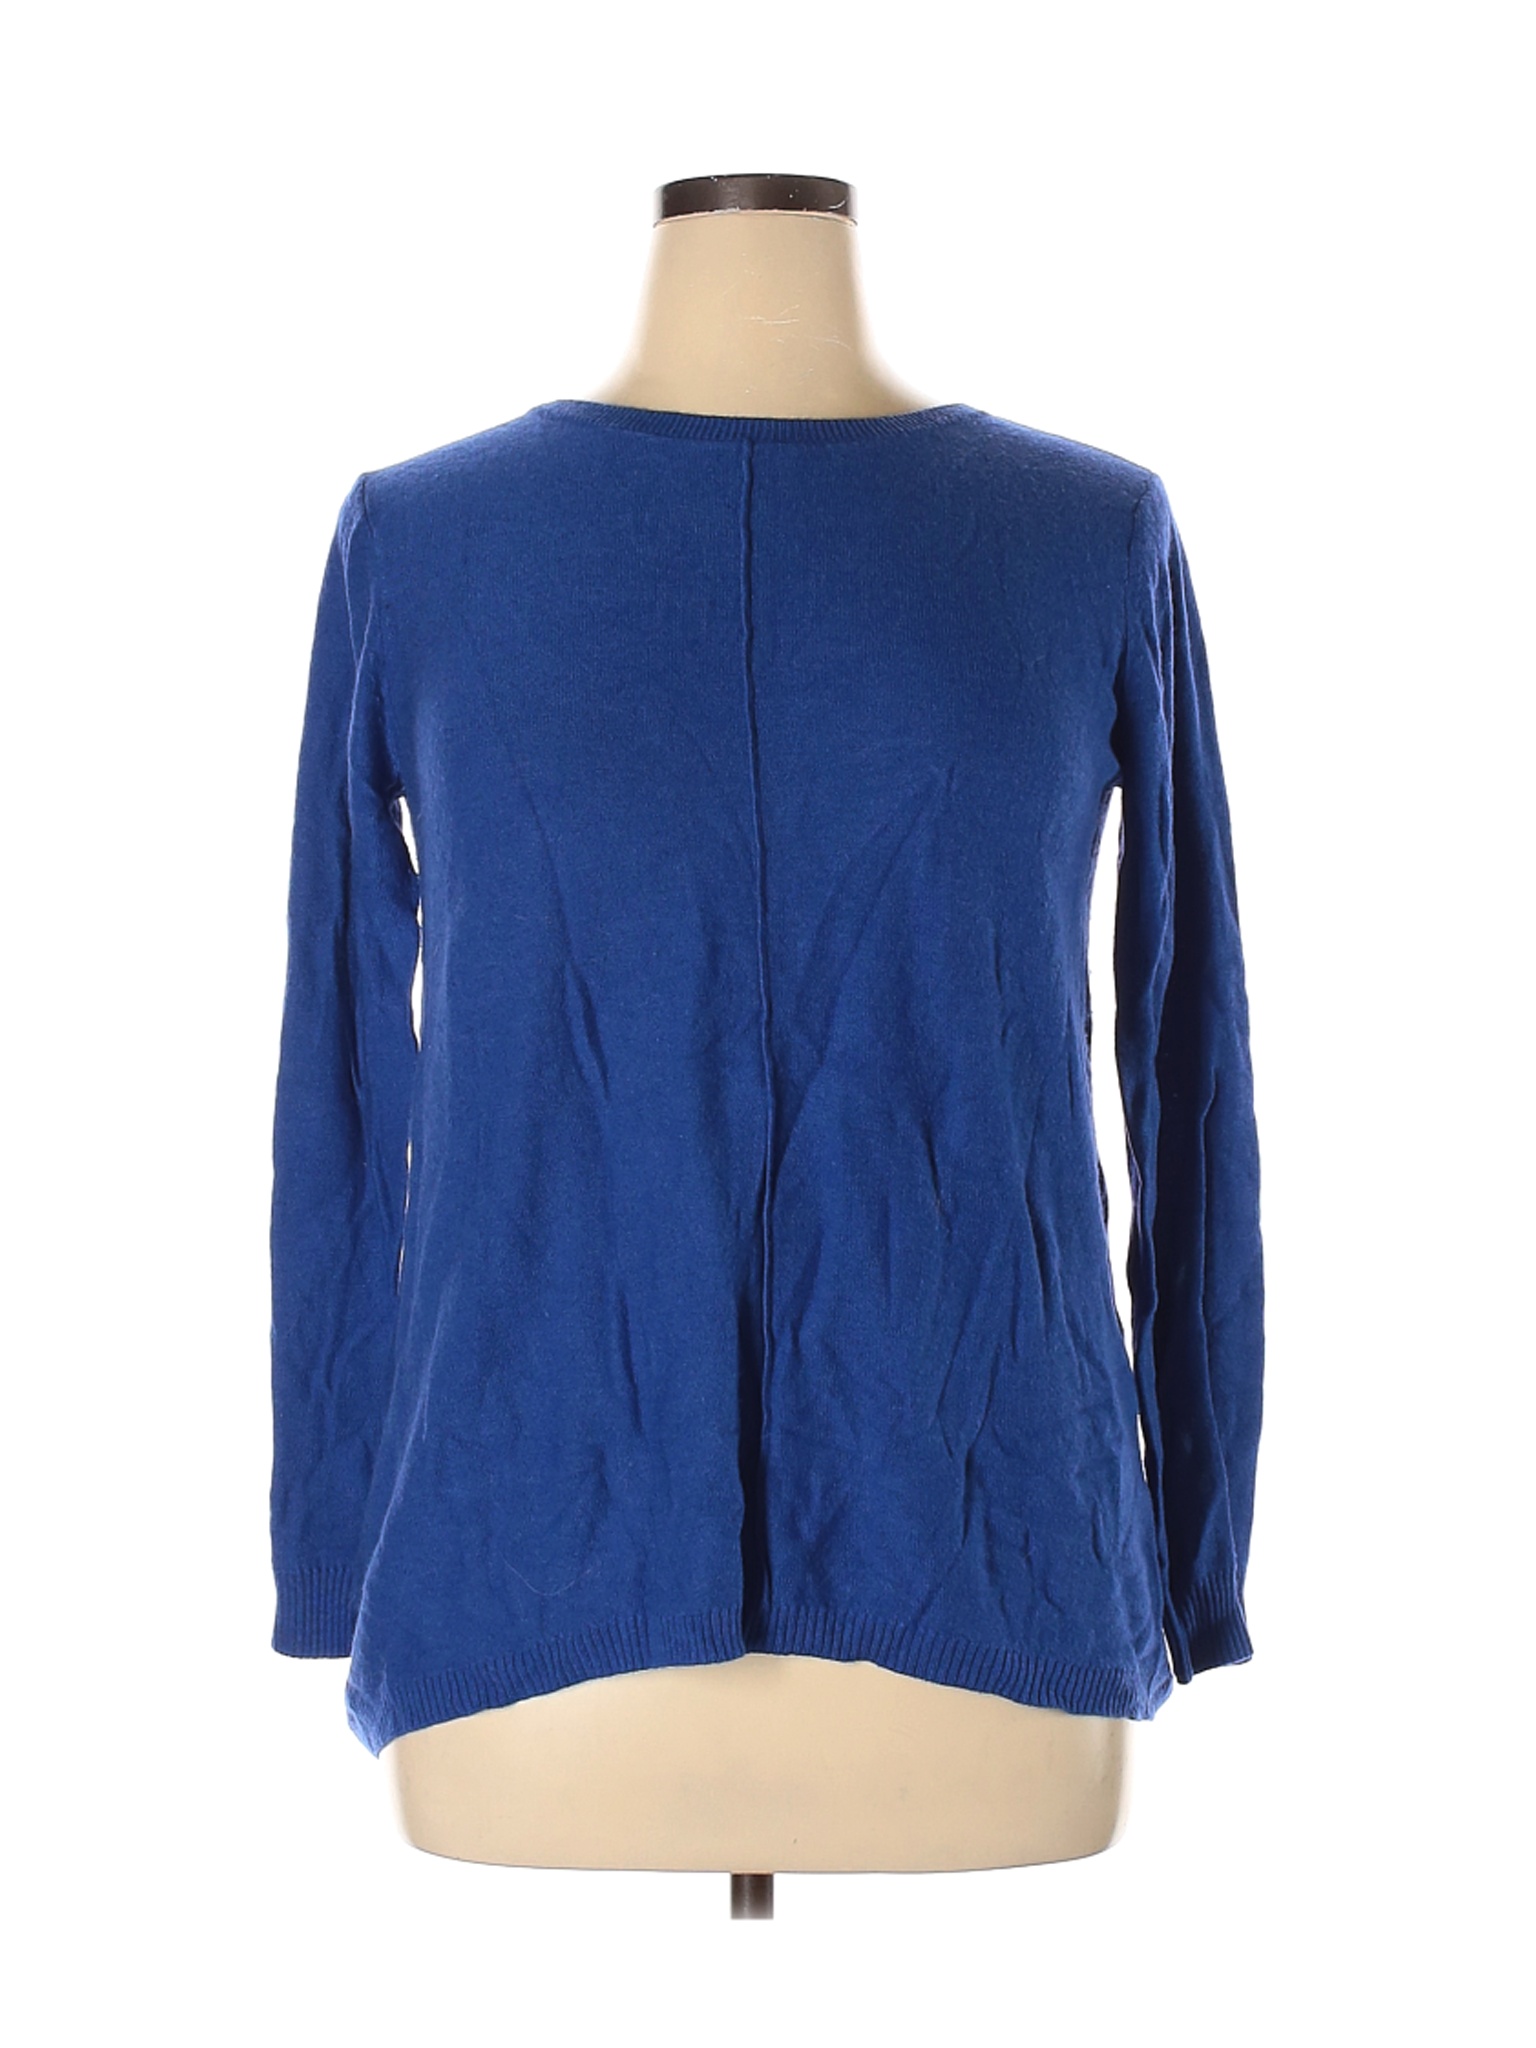 Two Twenty Five Women Blue Pullover Sweater XL | eBay